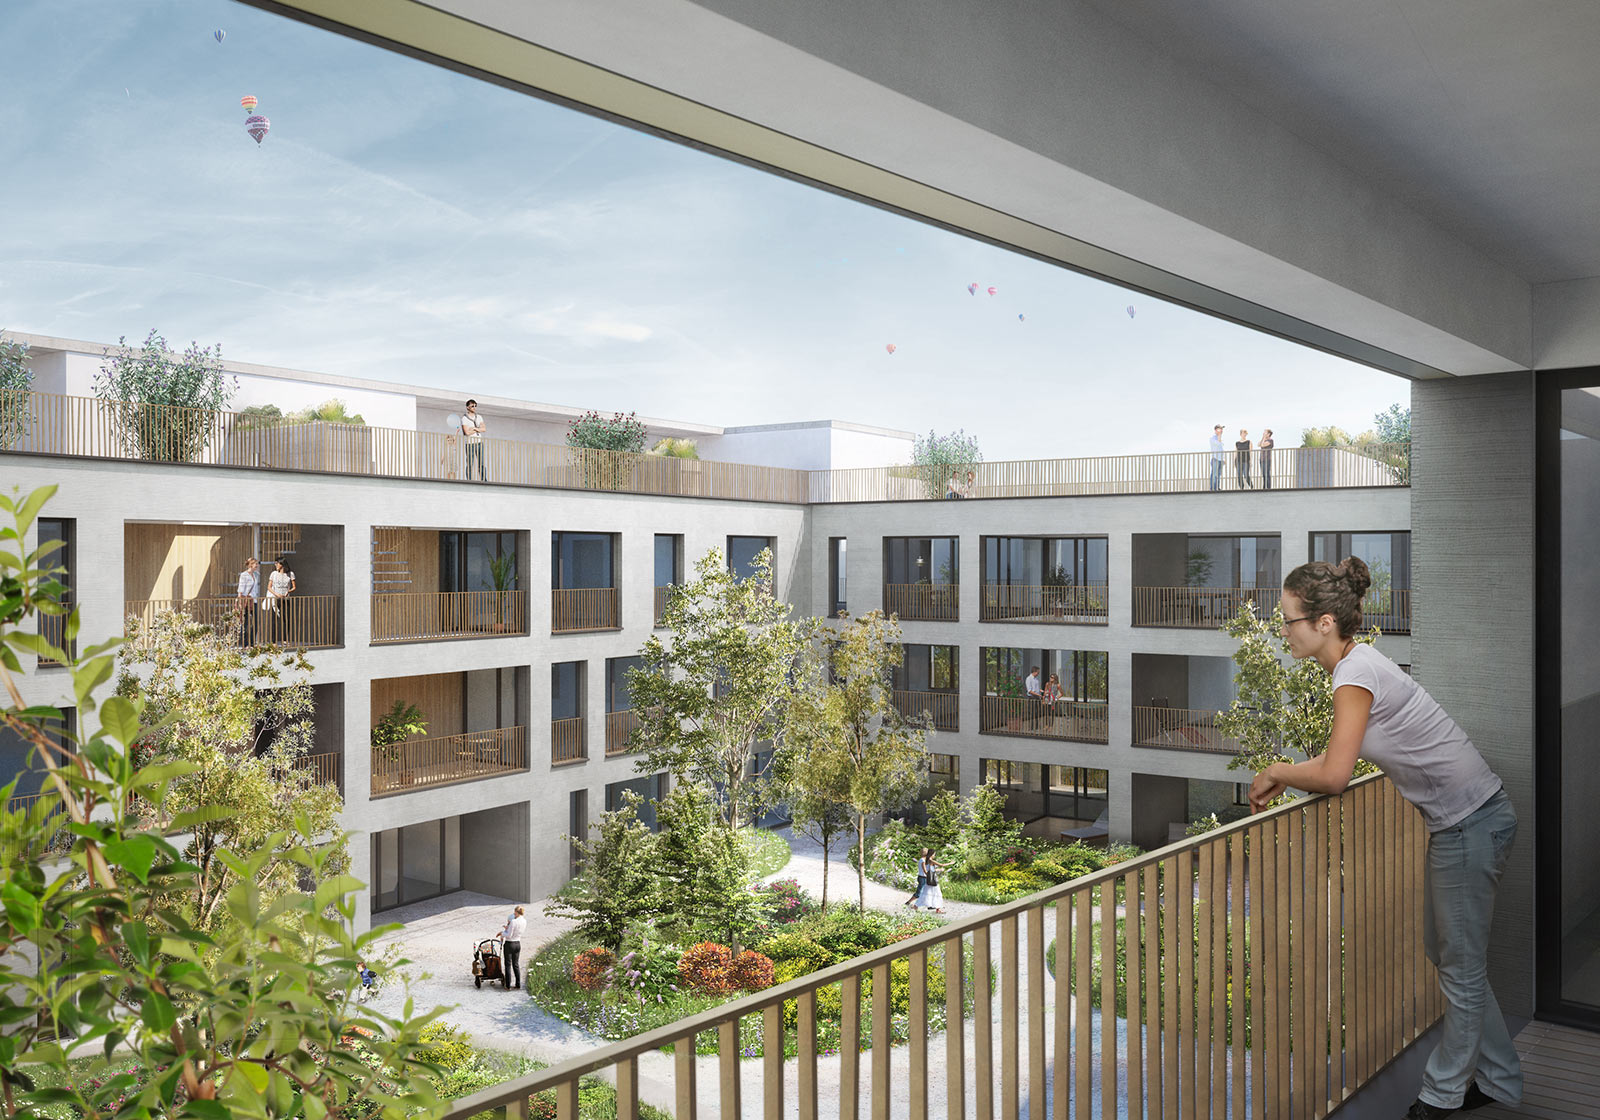 Каждая квартира оснащена балконом, а некоторые имеют доступ к террасам на крыше. На этом изображении показана квартира с видом на зеленый внутренний двор. Визуализация: ATP architects engineers